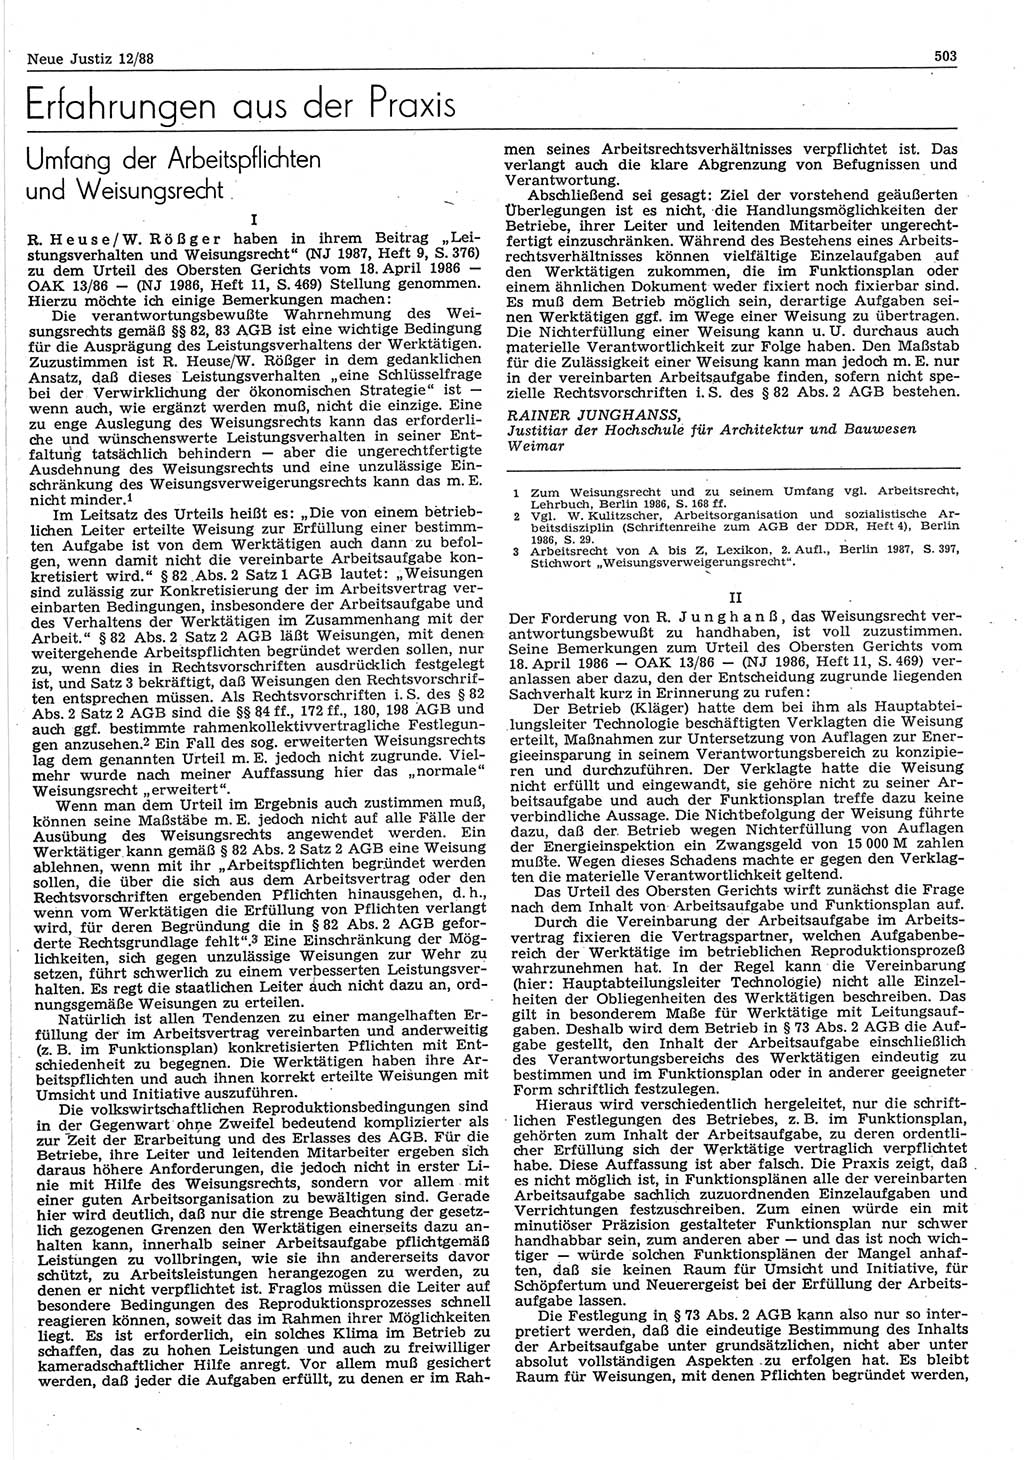 Neue Justiz (NJ), Zeitschrift für sozialistisches Recht und Gesetzlichkeit [Deutsche Demokratische Republik (DDR)], 42. Jahrgang 1988, Seite 503 (NJ DDR 1988, S. 503)